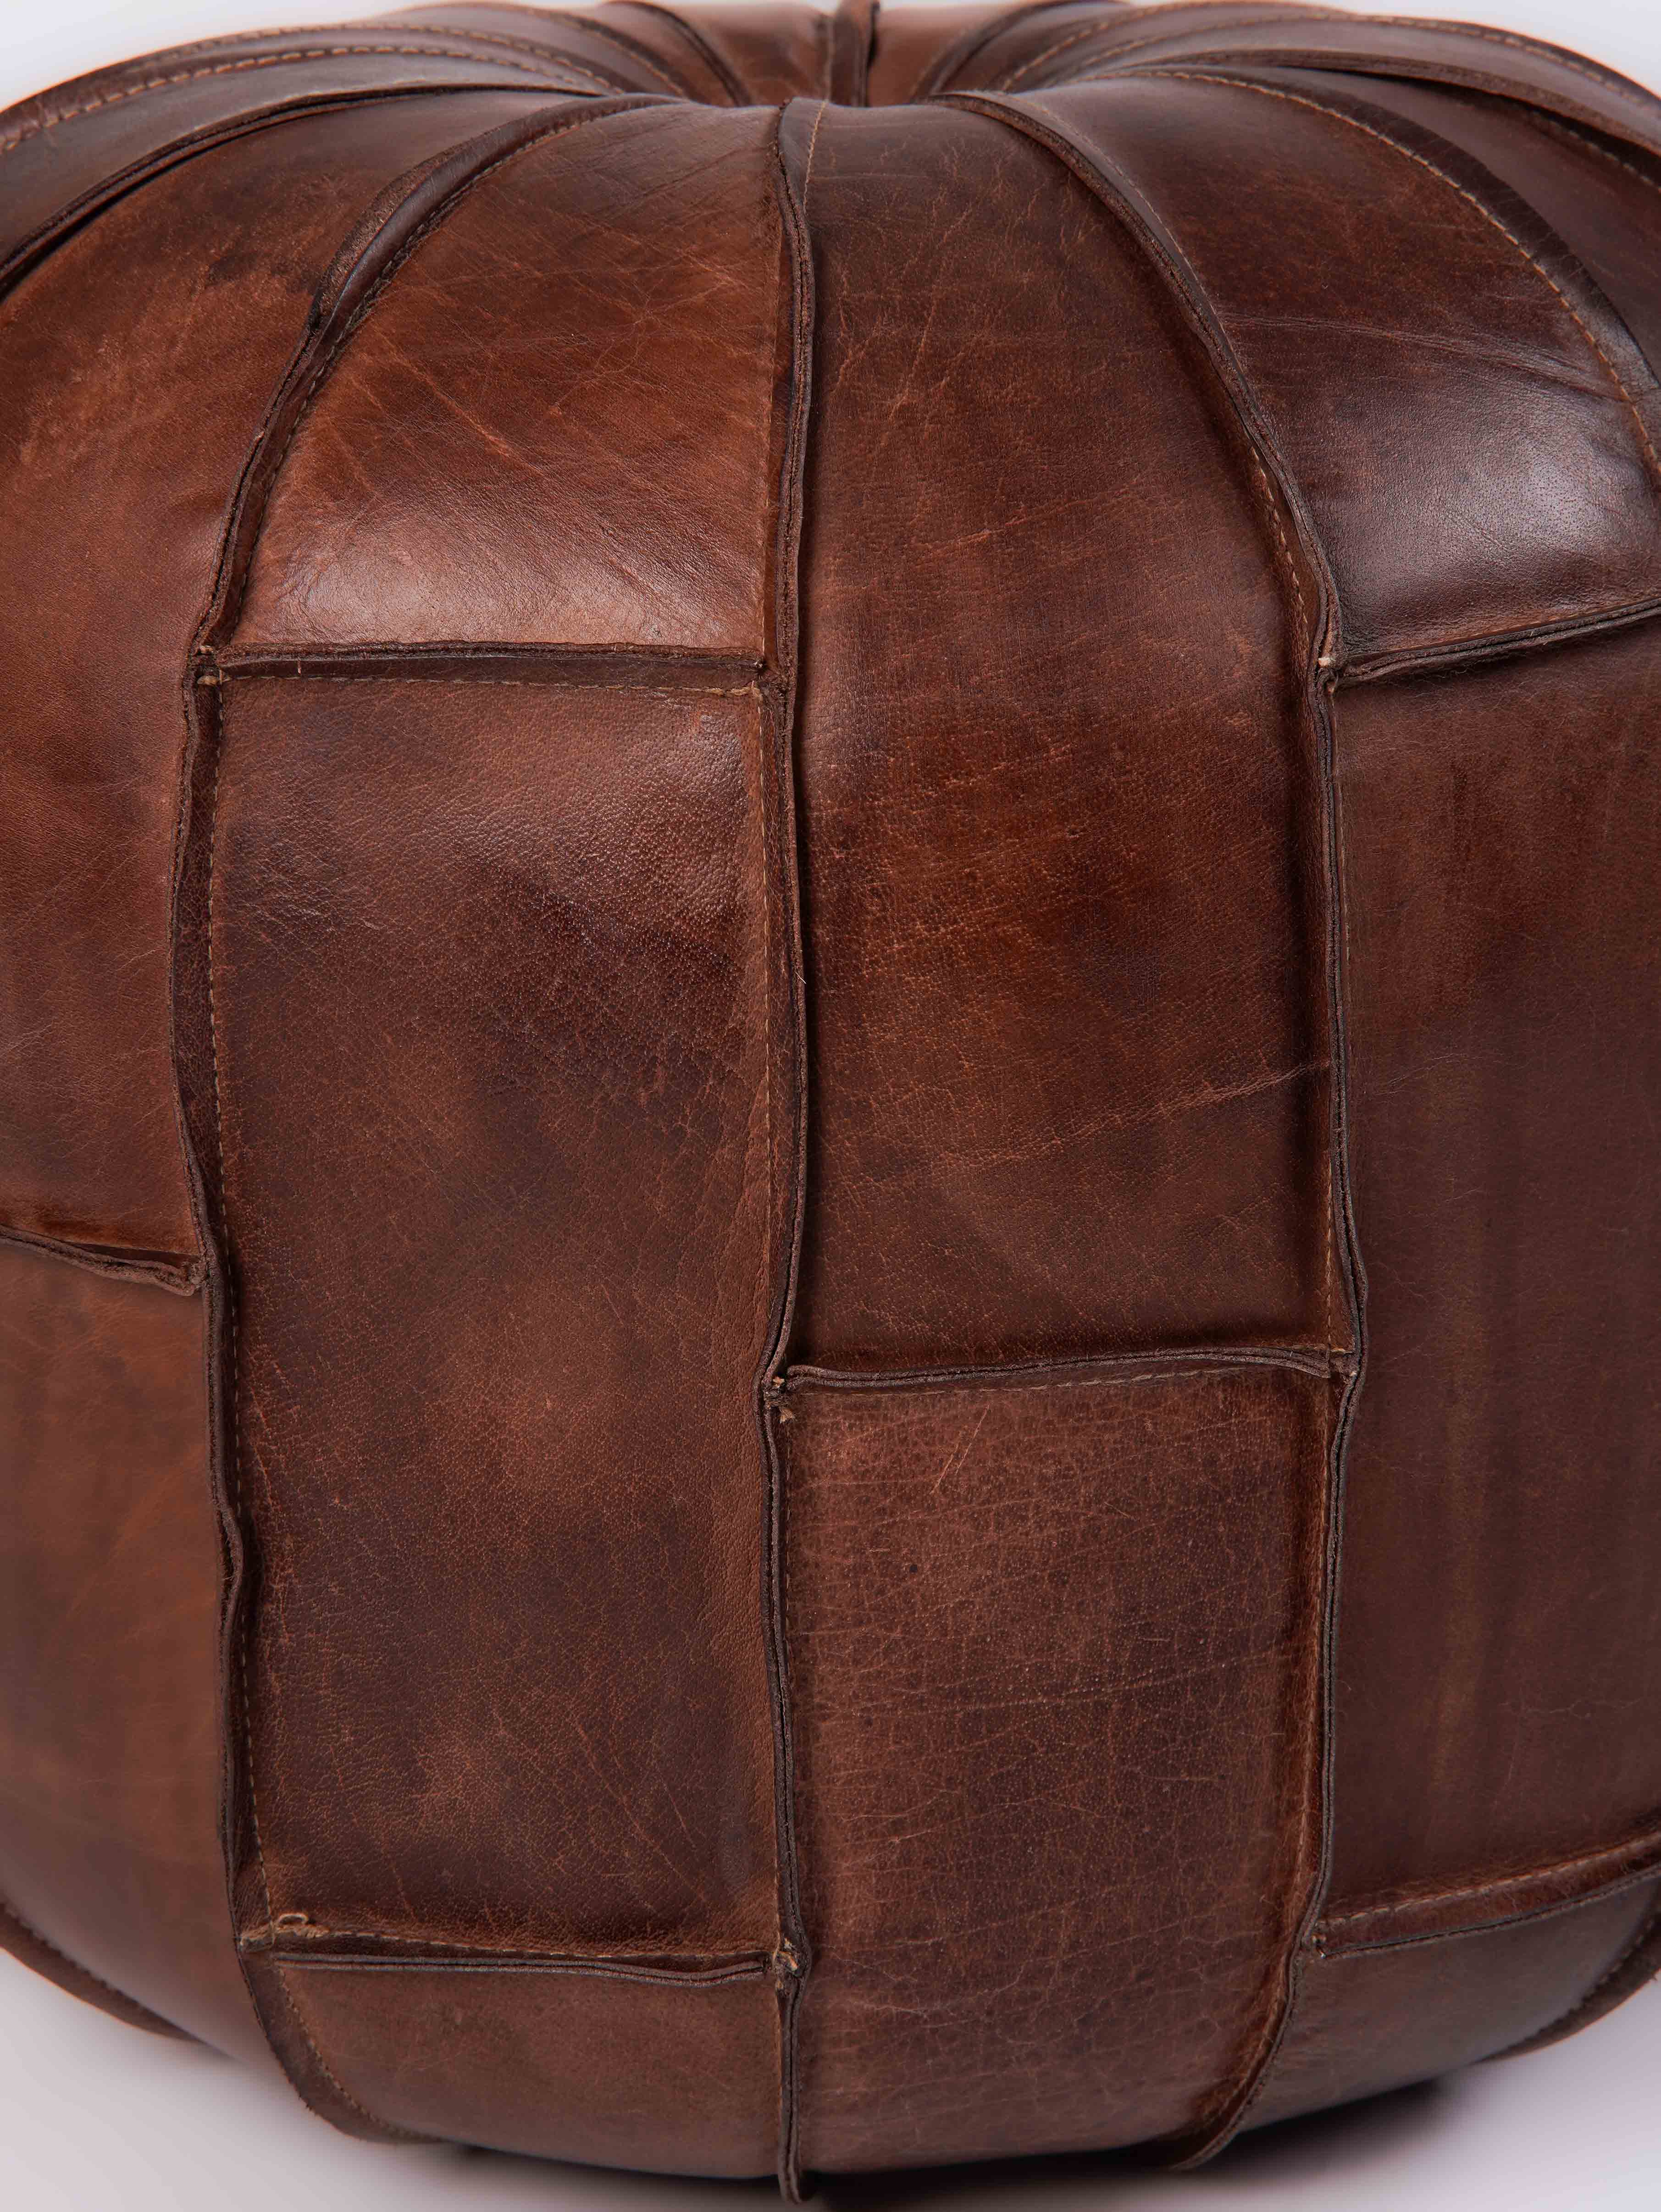 Prairie Stitch Leather Pouf